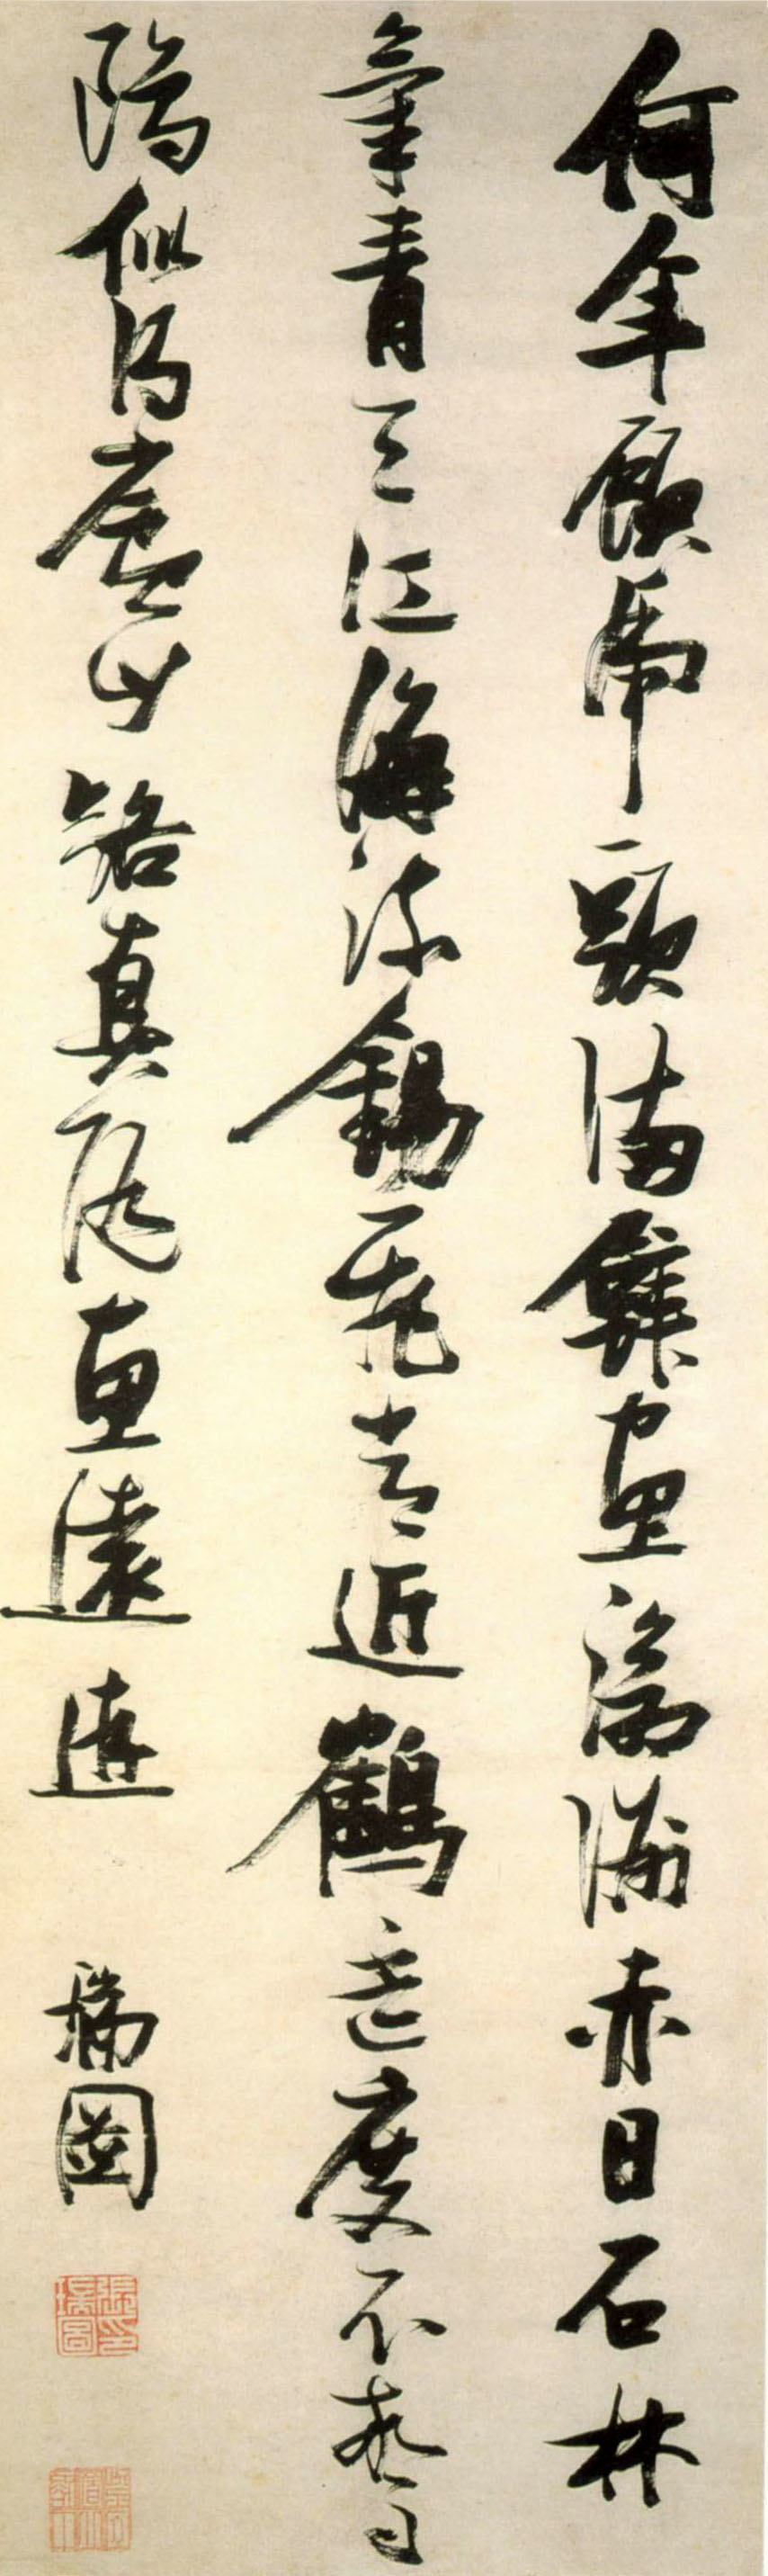 张瑞图《行书杜甫题玄武禅师屋壁诗》轴-上海博物馆藏 (图1)